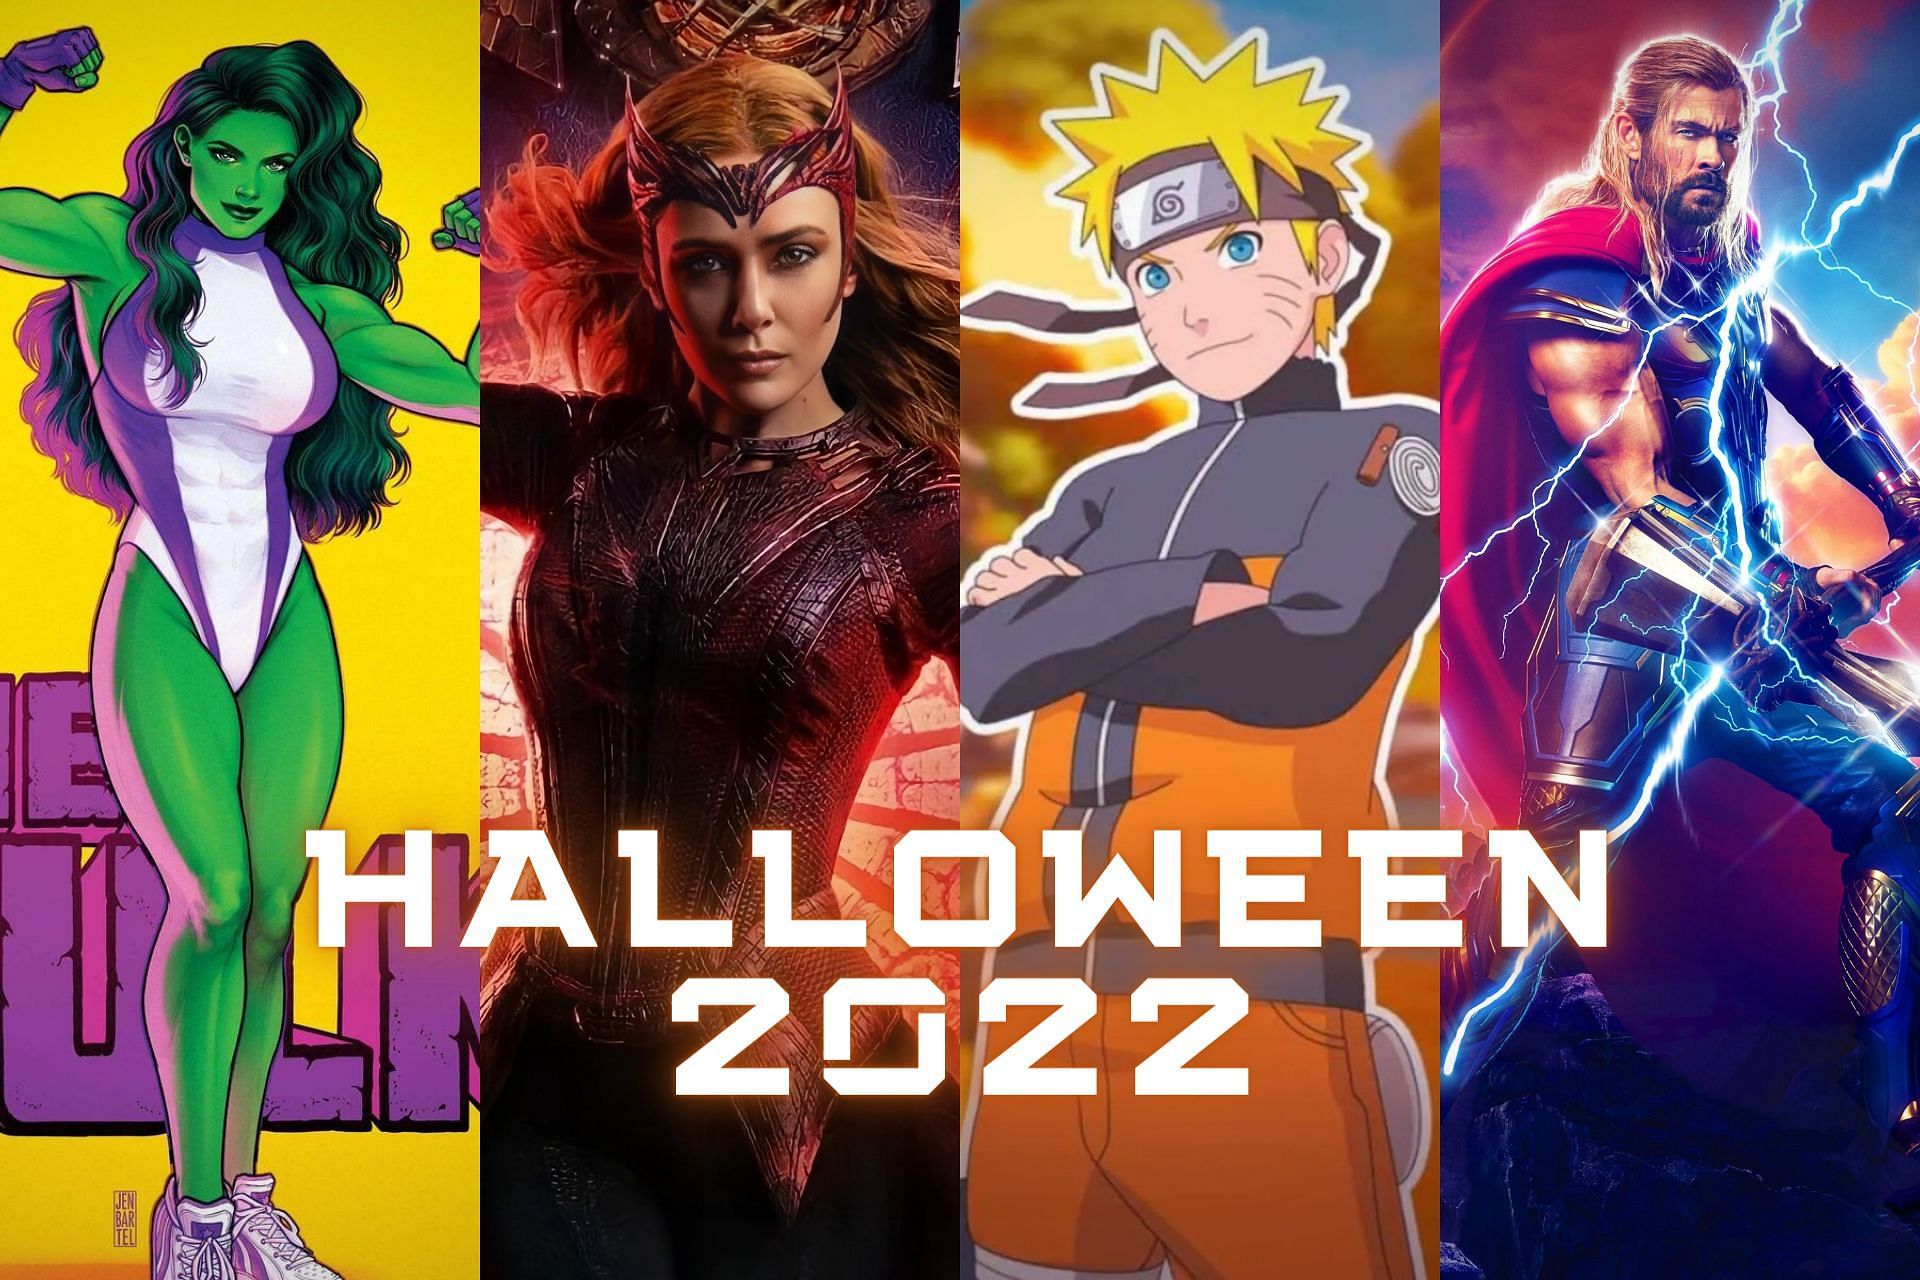 Halloween costumes 2022: 7 best superhero costume ideas (Image via Sportskeeda)